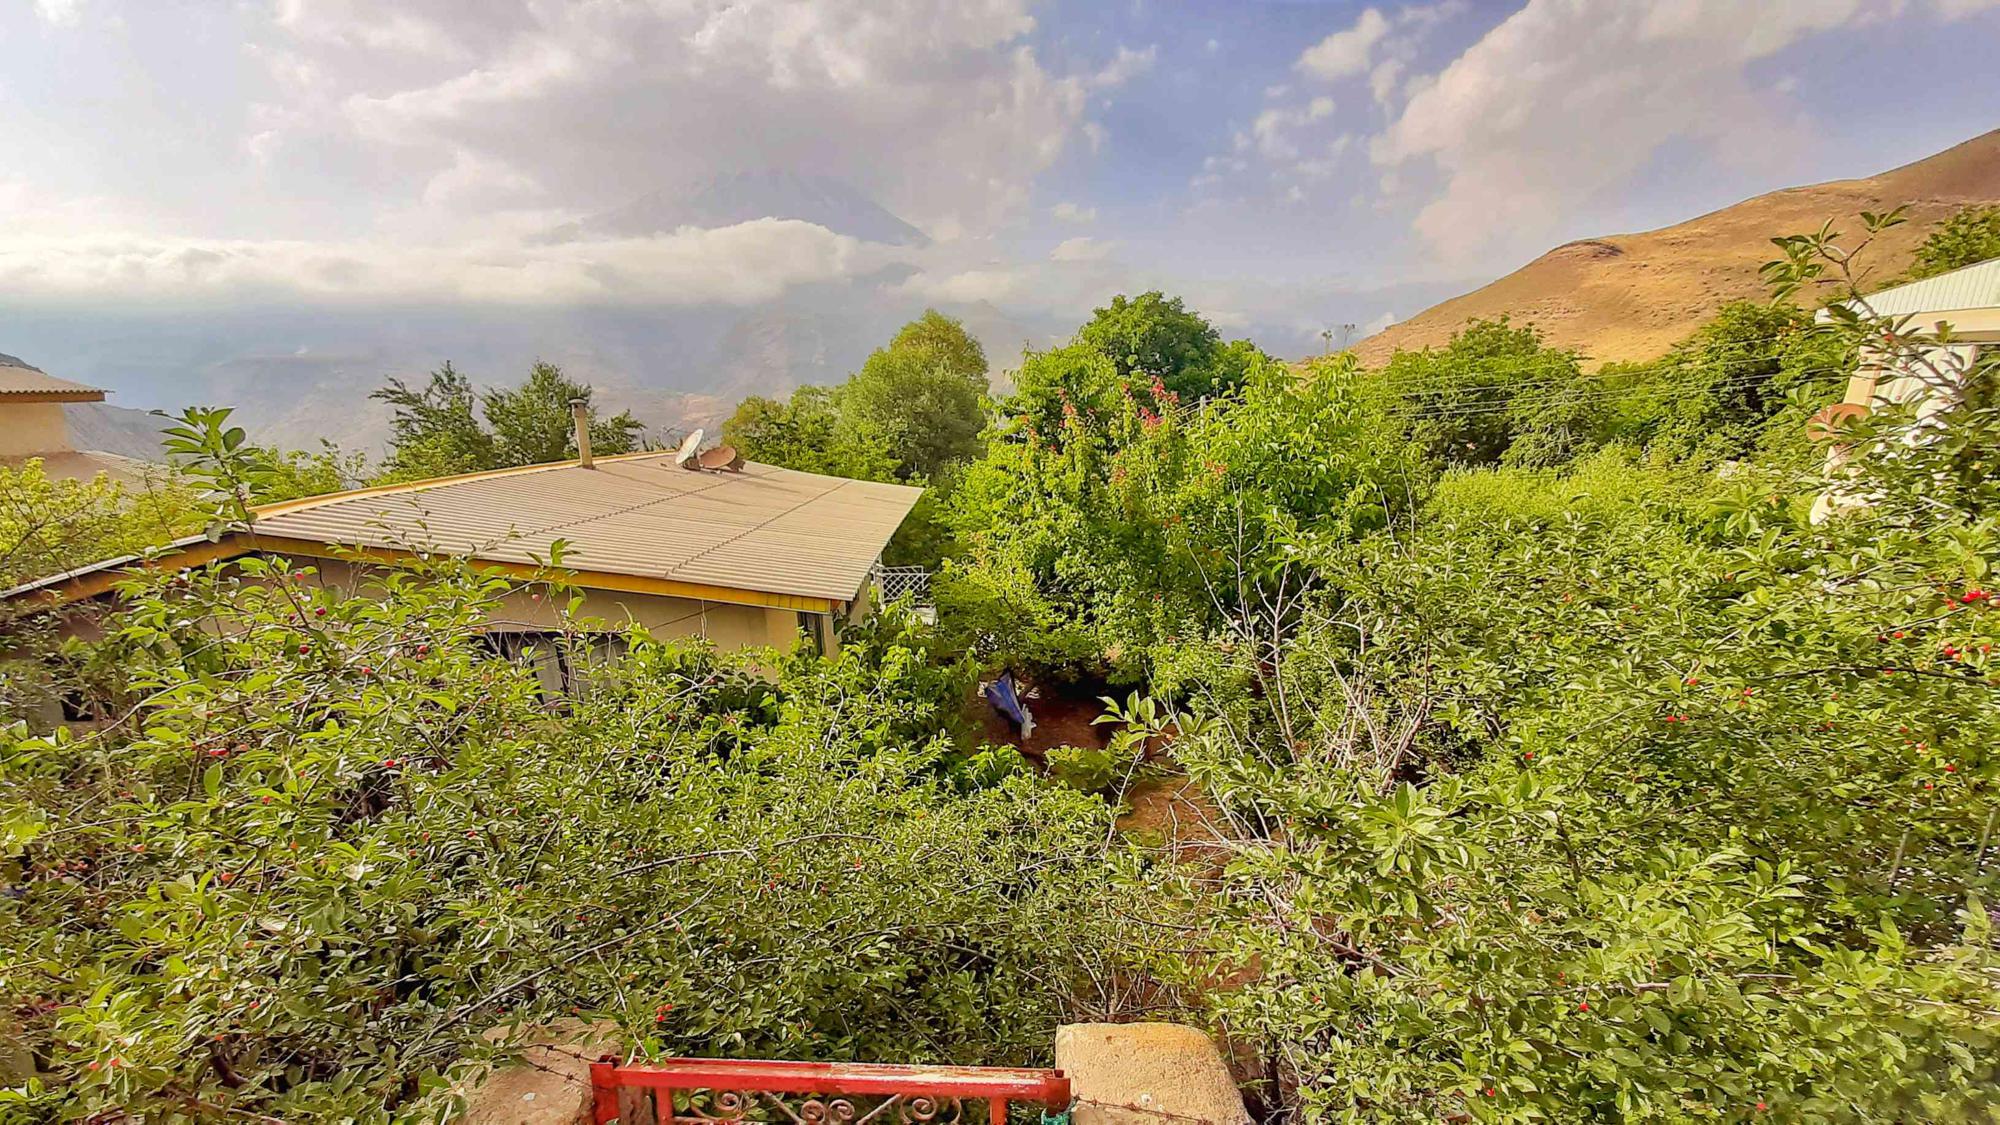 فروش خانه باغ ۵۵۰ متر در منطقه ایرا لاریجان واقع در جاده هراز بالای آب اسک ویو قله دماوند